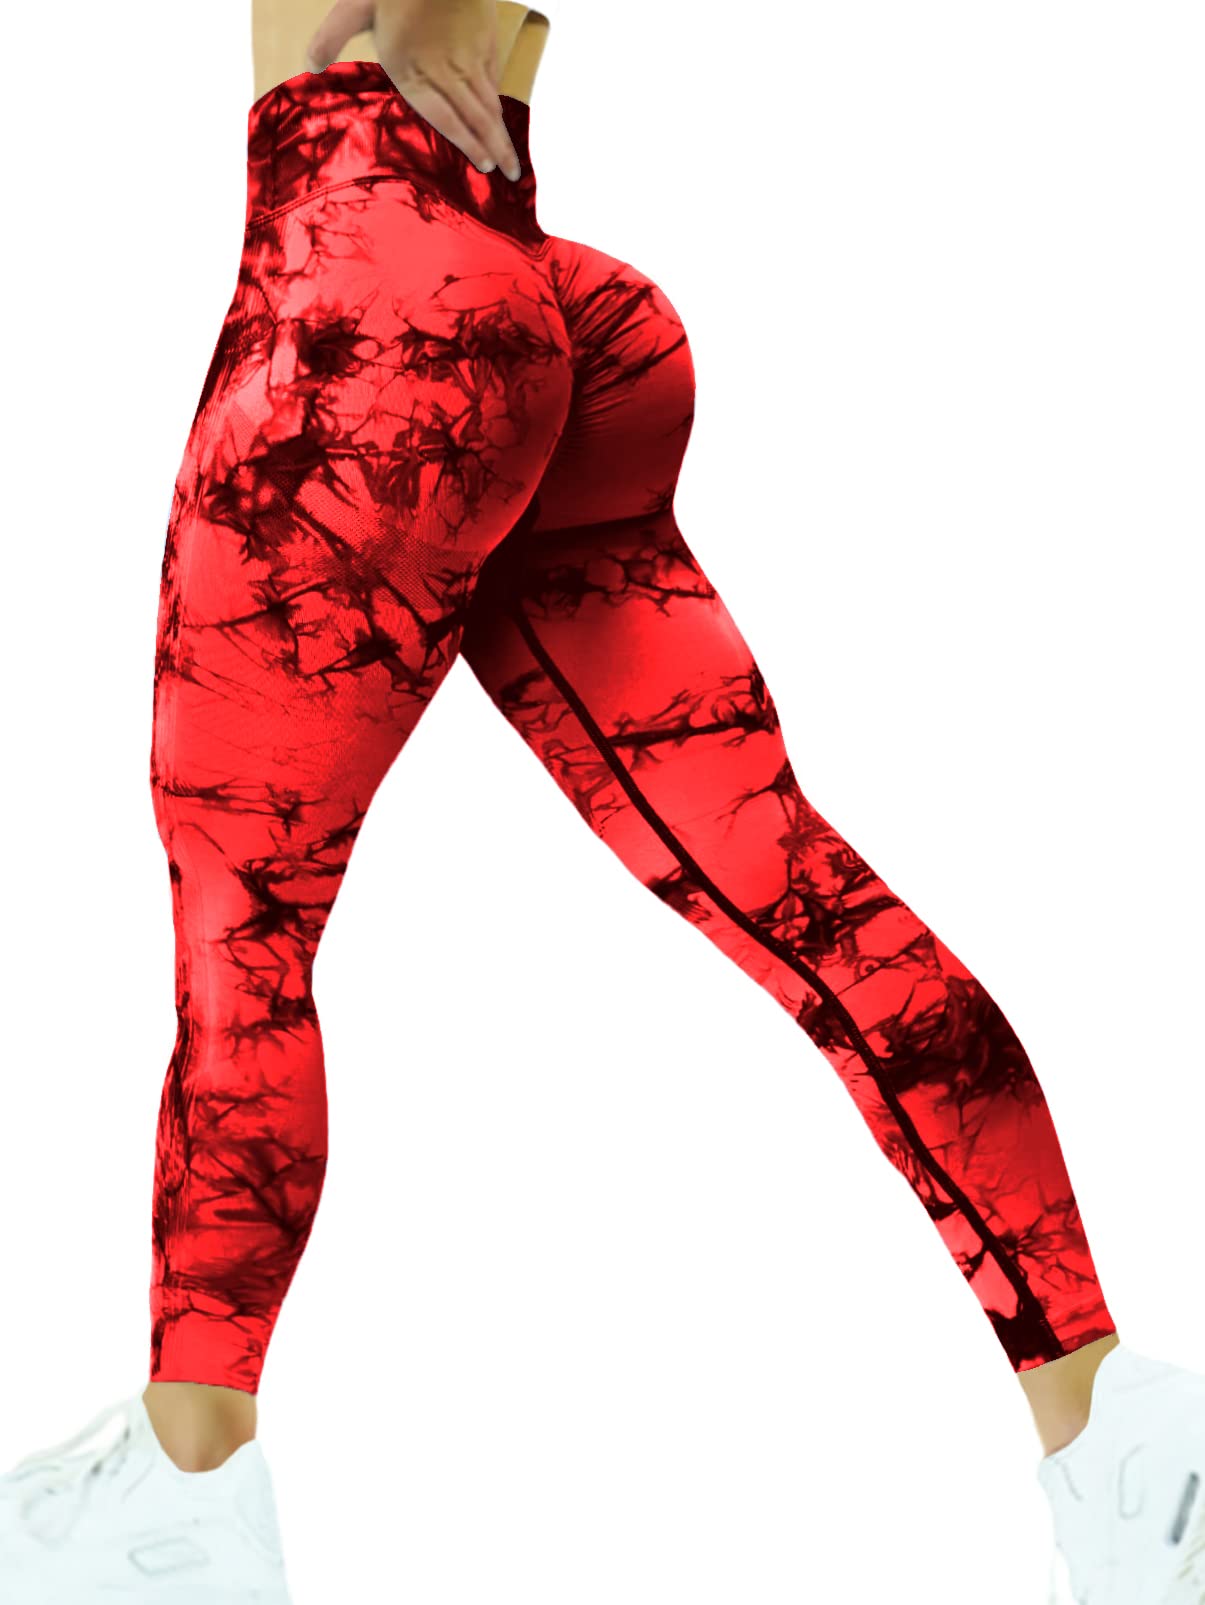 SENBAN Scrunch Butt Lift Leggings for Women High Waist Seamless Yoga Pants  Workout Gym Compression Tights A Tie Dye Red Medium Long